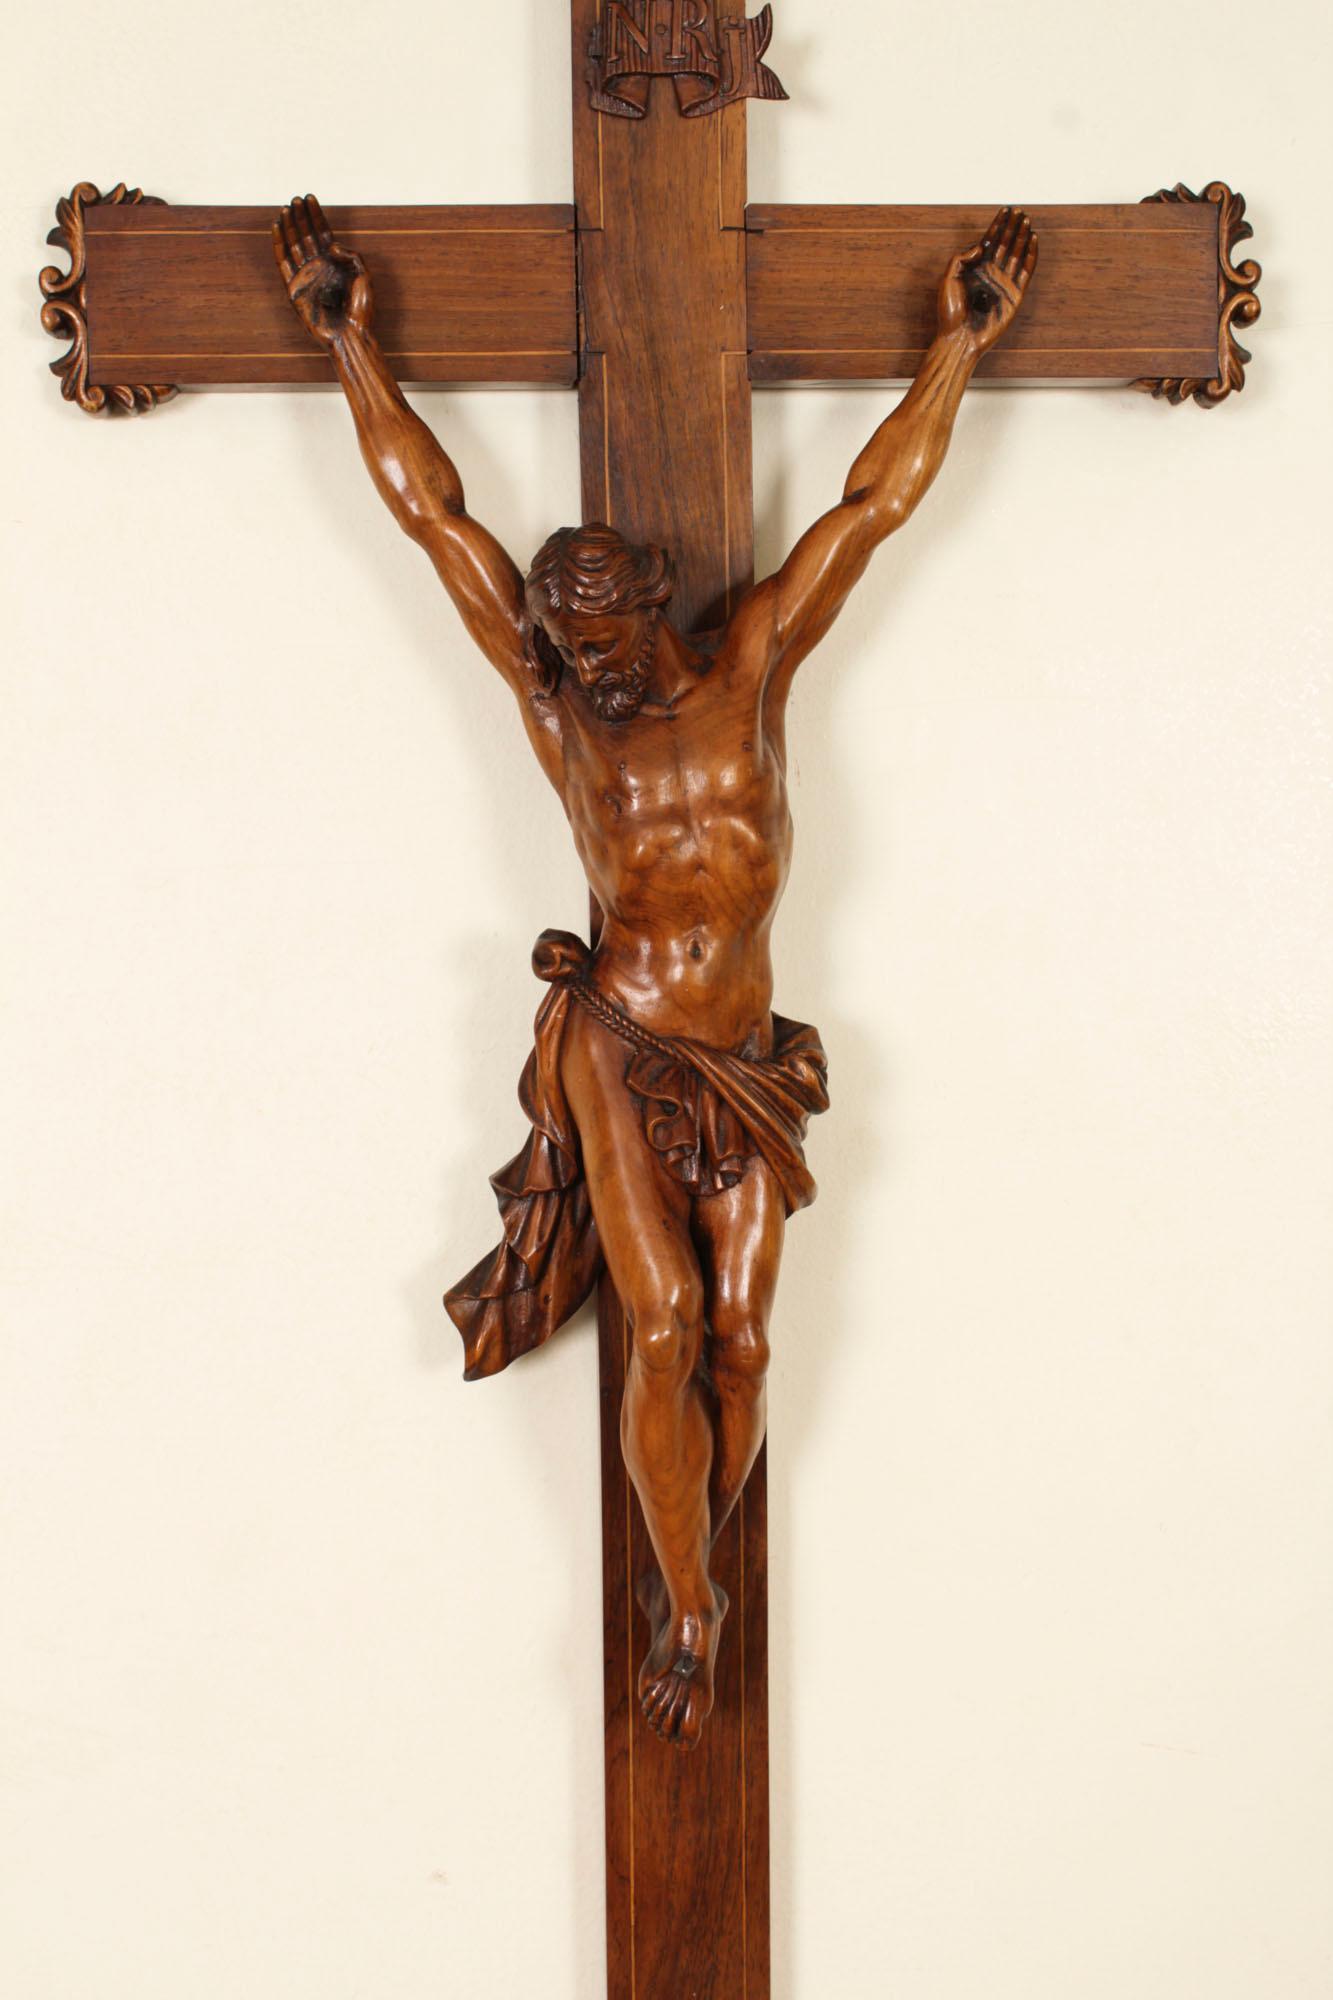 Dies ist ein großes, feines, antikes, französisches, patiniertes Altarkreuz aus Nussbaumholz, datiert um 1860.

Die Einzelheiten  sind sehr beeindruckend, der Corpus Christi ist sehr fein geschnitzt und lebensecht, er trägt ein fließendes